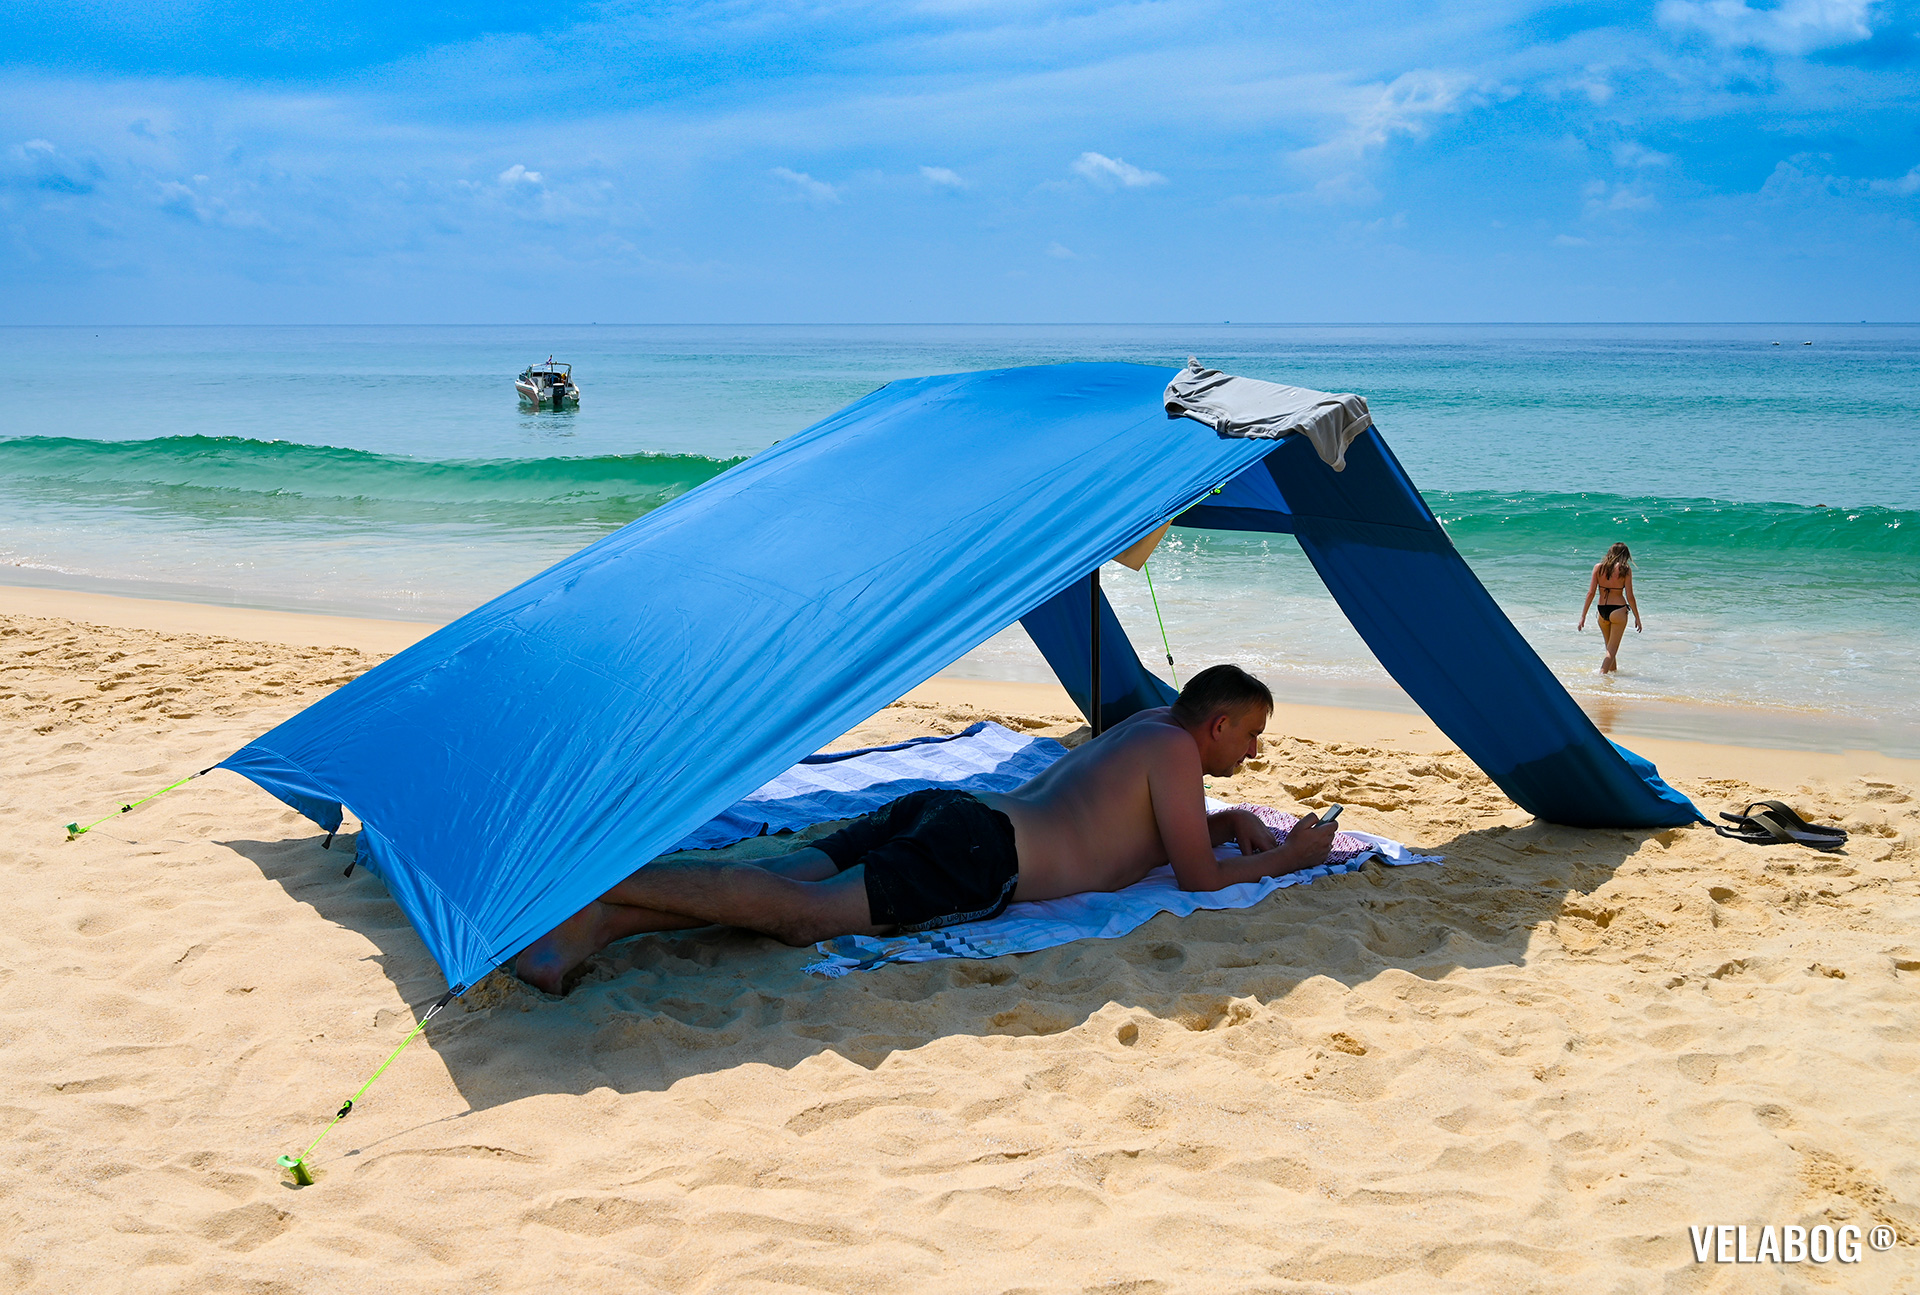 Strand Sonnensegel Strandzelt Velabog Breeze, blau. Luftiger Sonnenschutz am Strand auch ohne Wind. Beste Alternative zu Strandschirmen, Strandzelte und Strandmuscheln. Test Strand Sonnensegel Aufbauoption - kein, leichter oder böiger Wind. Ansicht von der Seite. Personen.